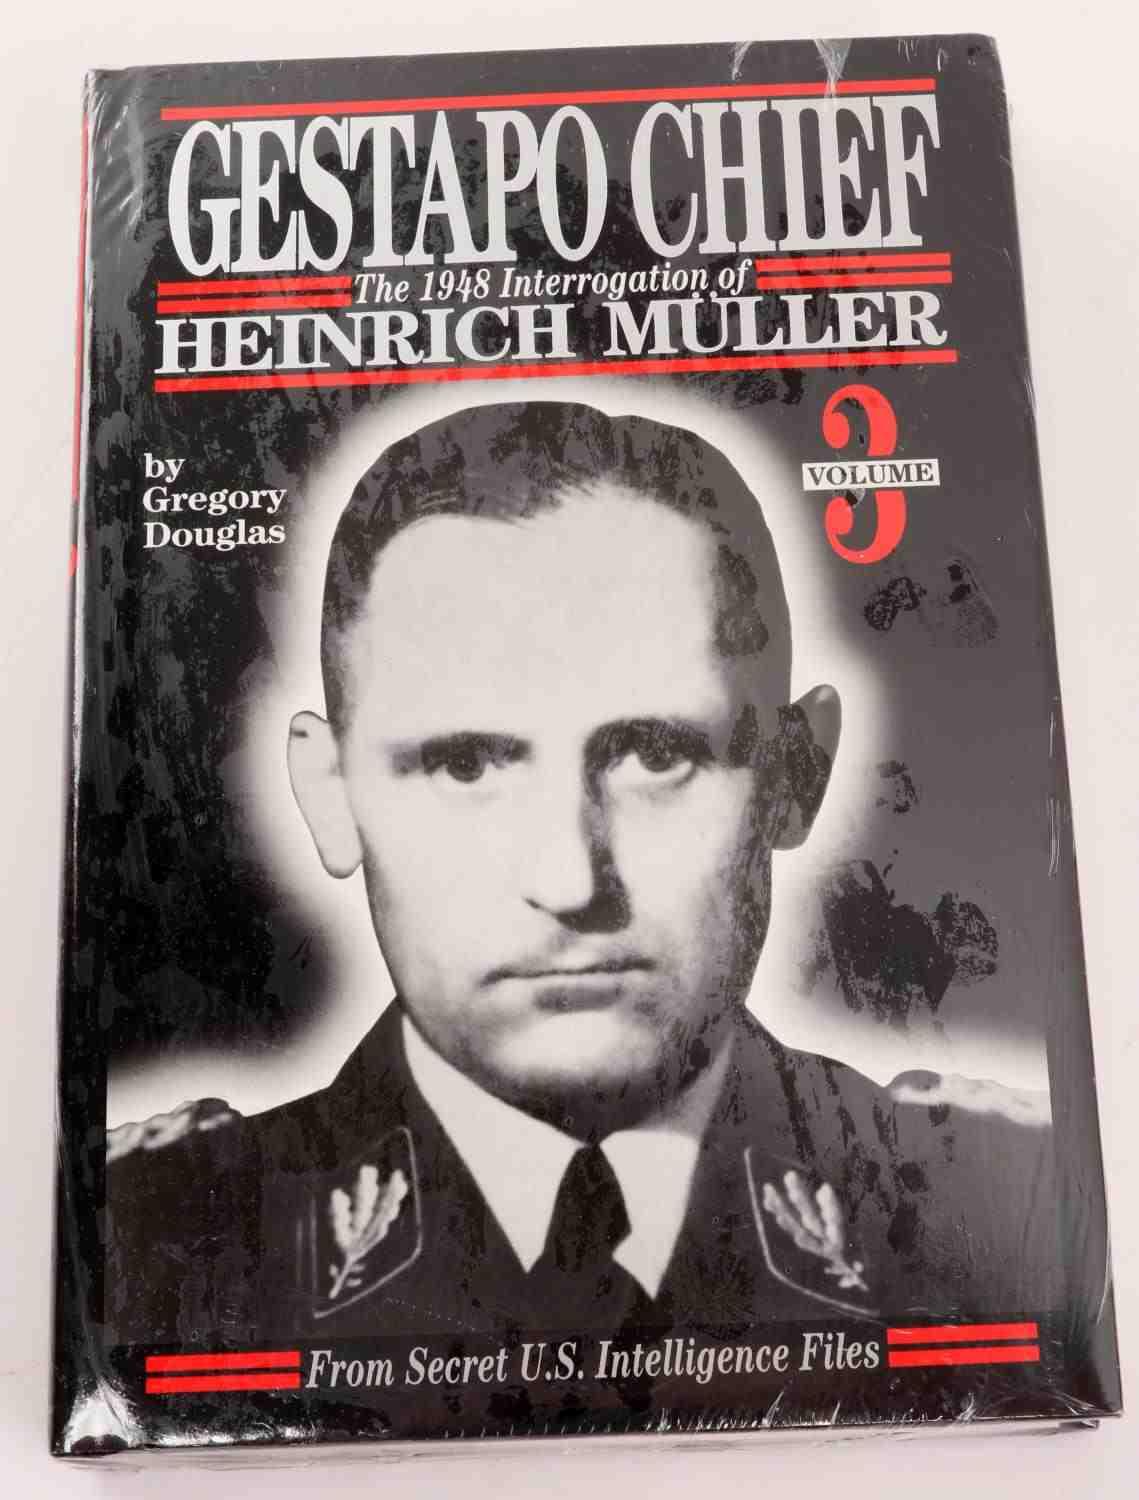 THIRD REICH HEINRICH MUELLER GESTAPO BOOK LOT OF 2